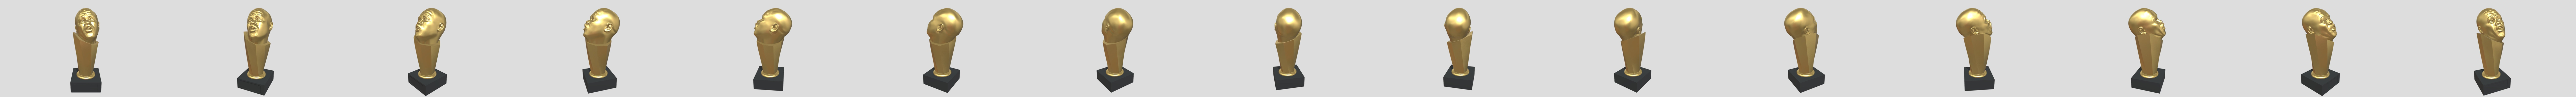 Shadface Trophy - Download Free 3D model by dndnkr (@oddlane) [d301984]